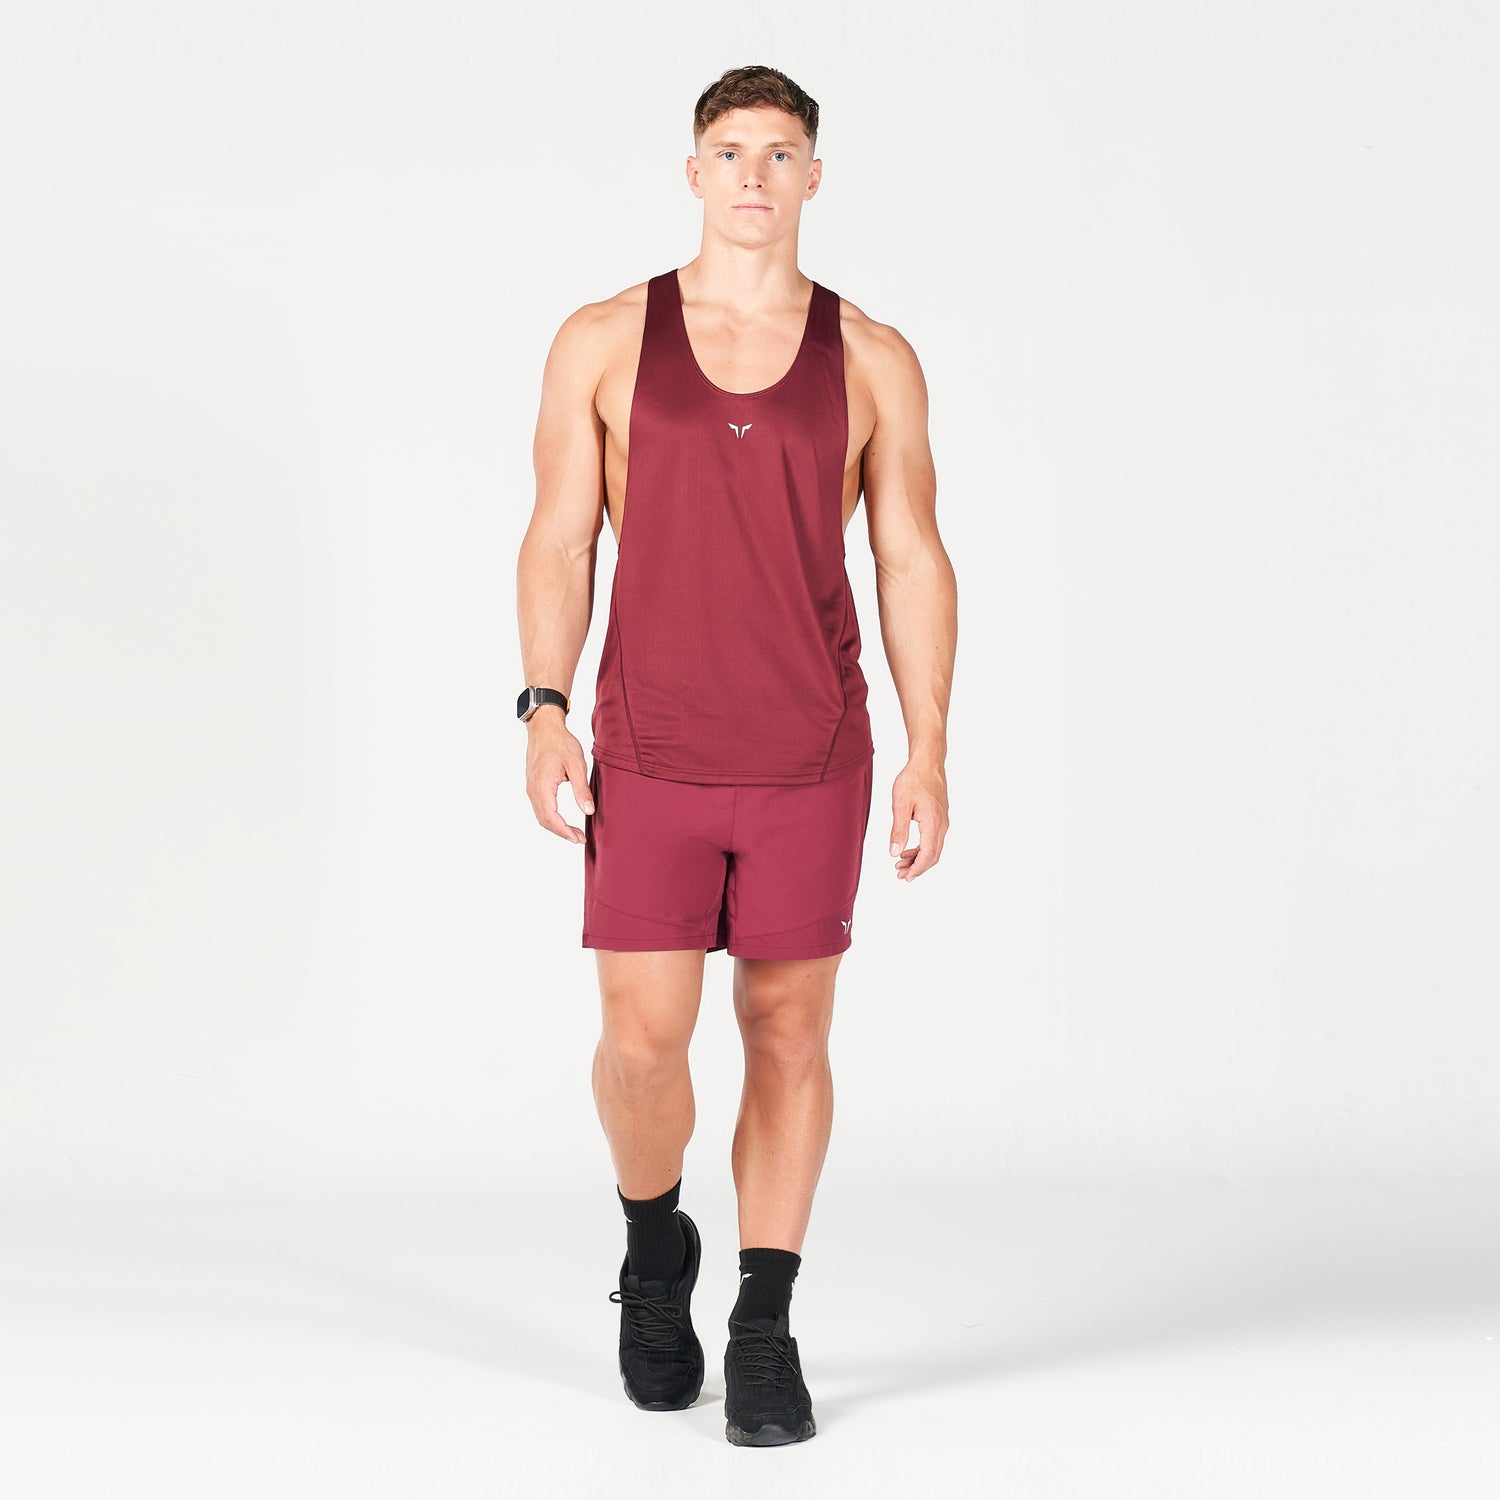 squatwolf-gym-wear-next-gen-hypercool-stringer-burgundy-stringer-vests-for-men